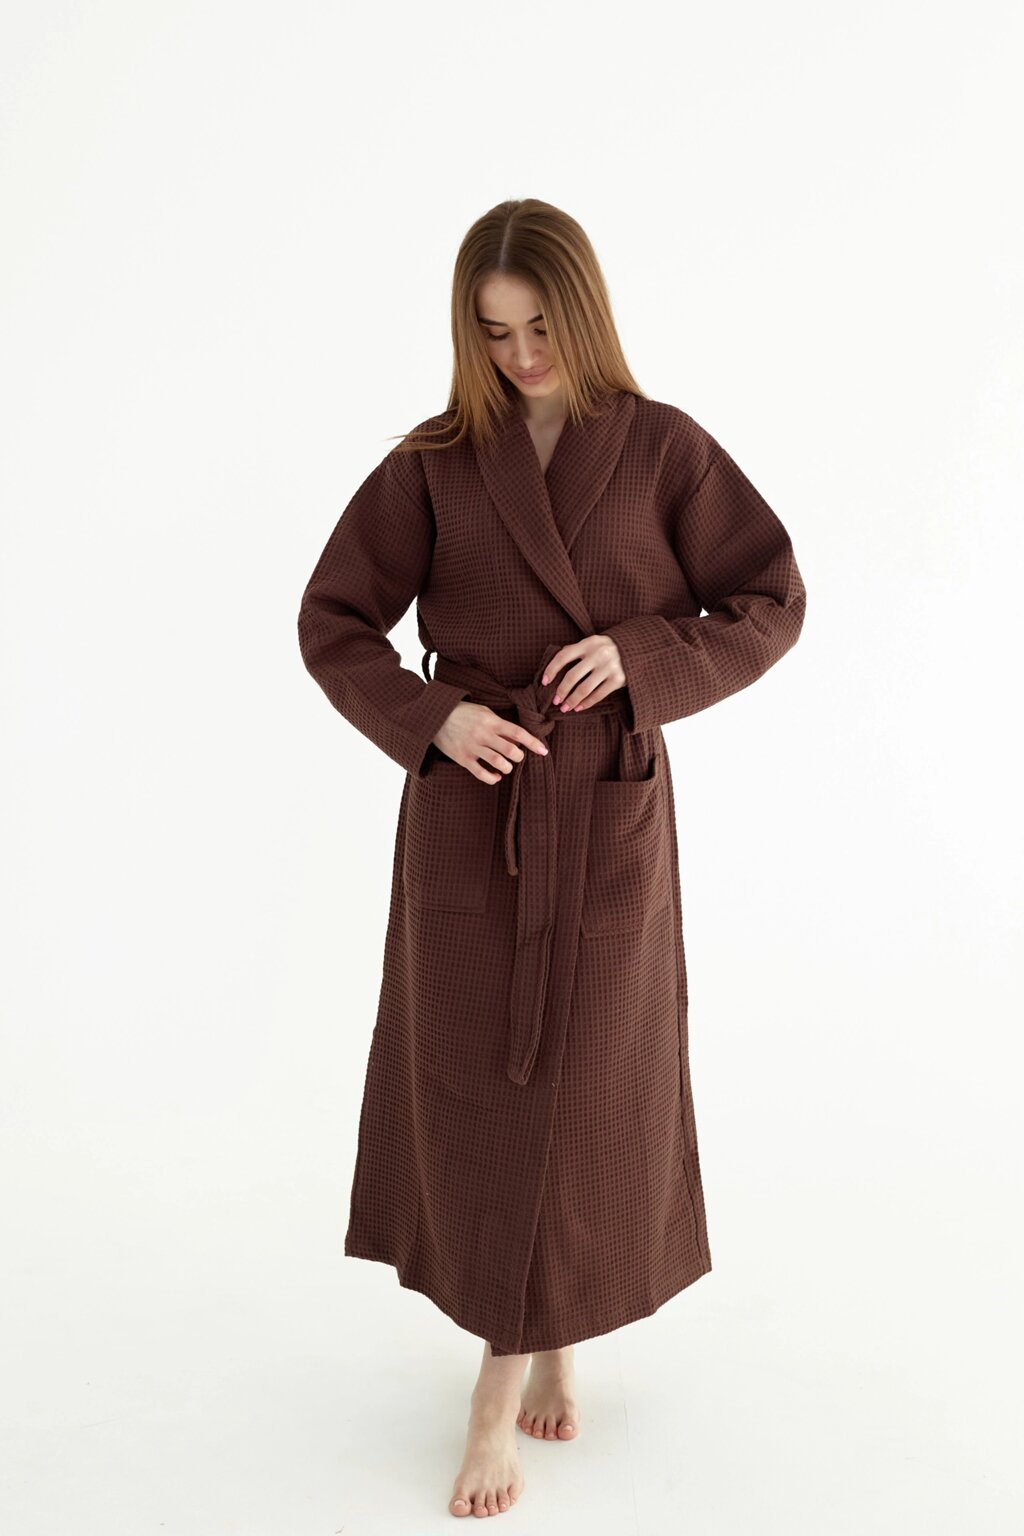 Вафельний халат жіночий M коричневий 100% бавовна 320 г/м2 від компанії IDEAL TEXTILE: махрові рушники, халати, постільна білизна - фото 1